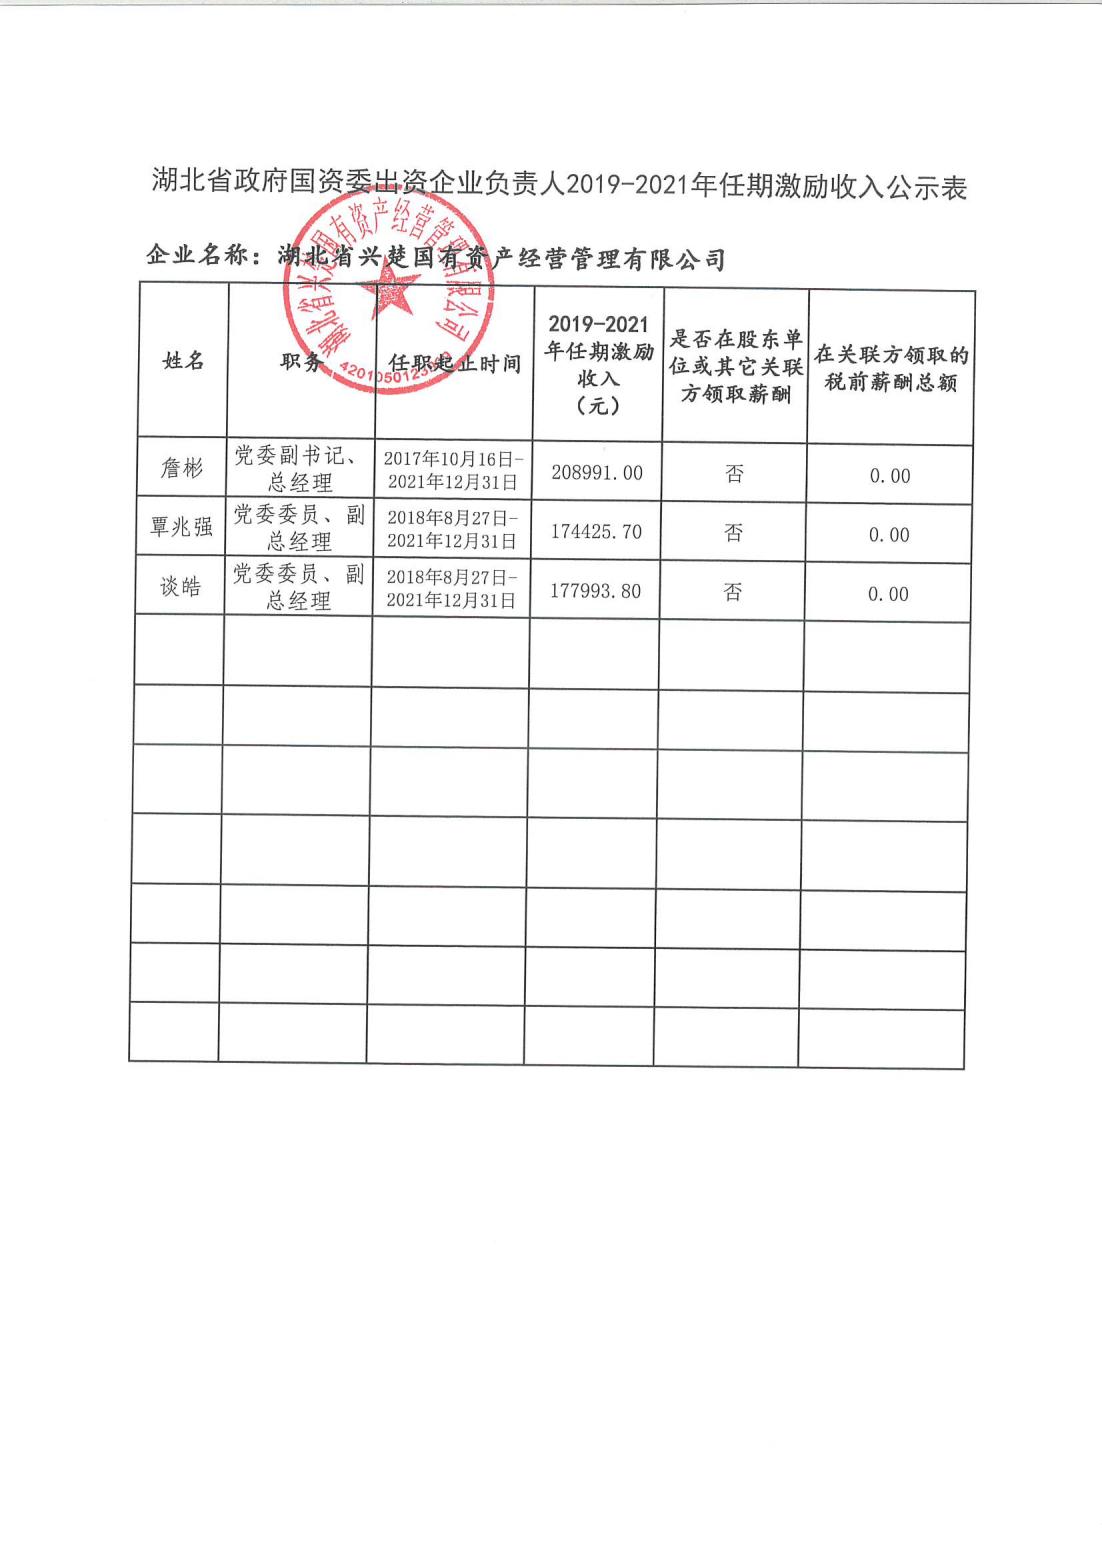 湖北省政府国资委出资企业负责人2019-2021年任期激励收入公示表.jpg